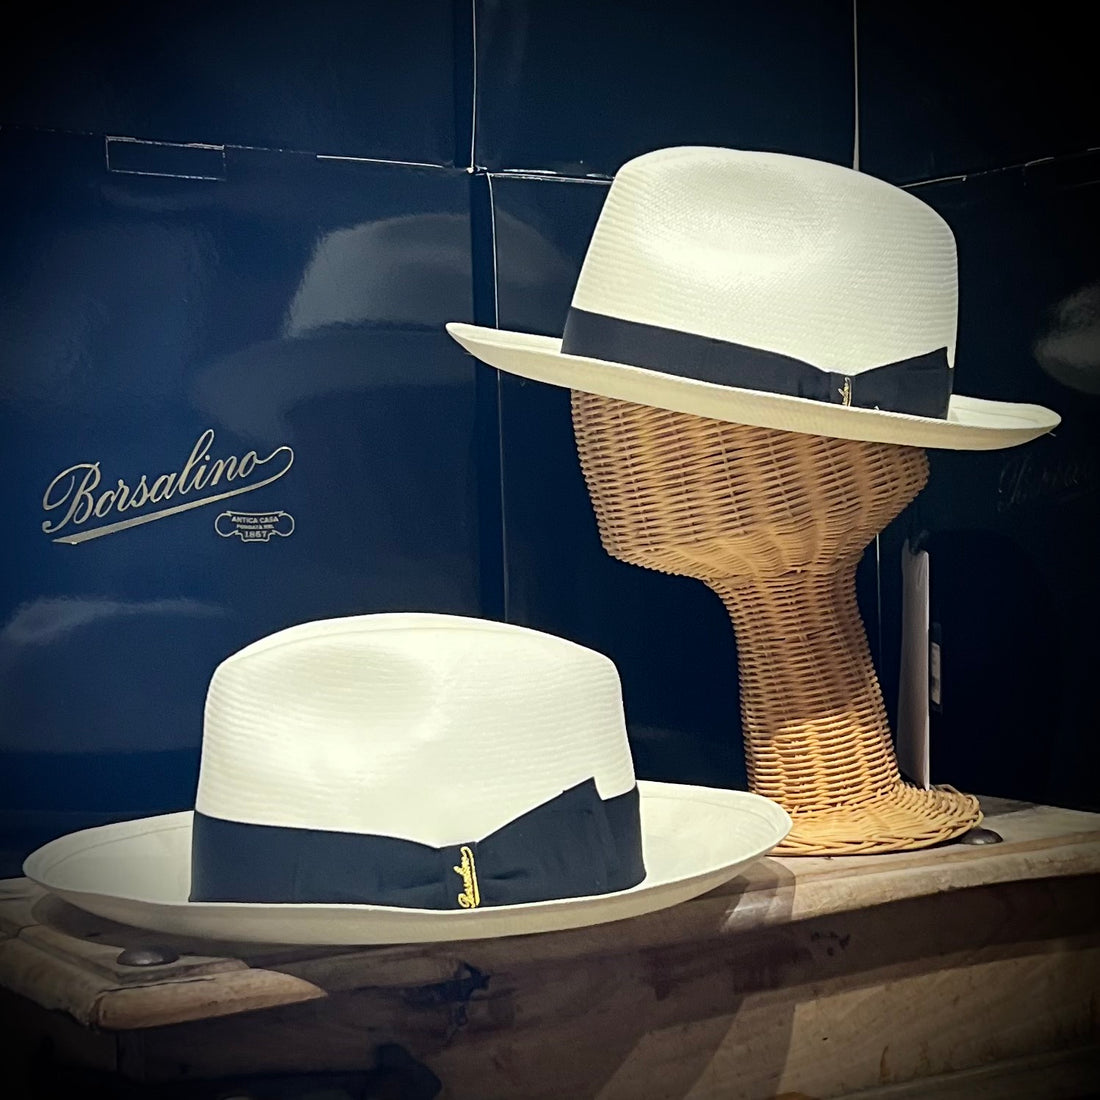 Borsalino Panama Hats in Los Angeles